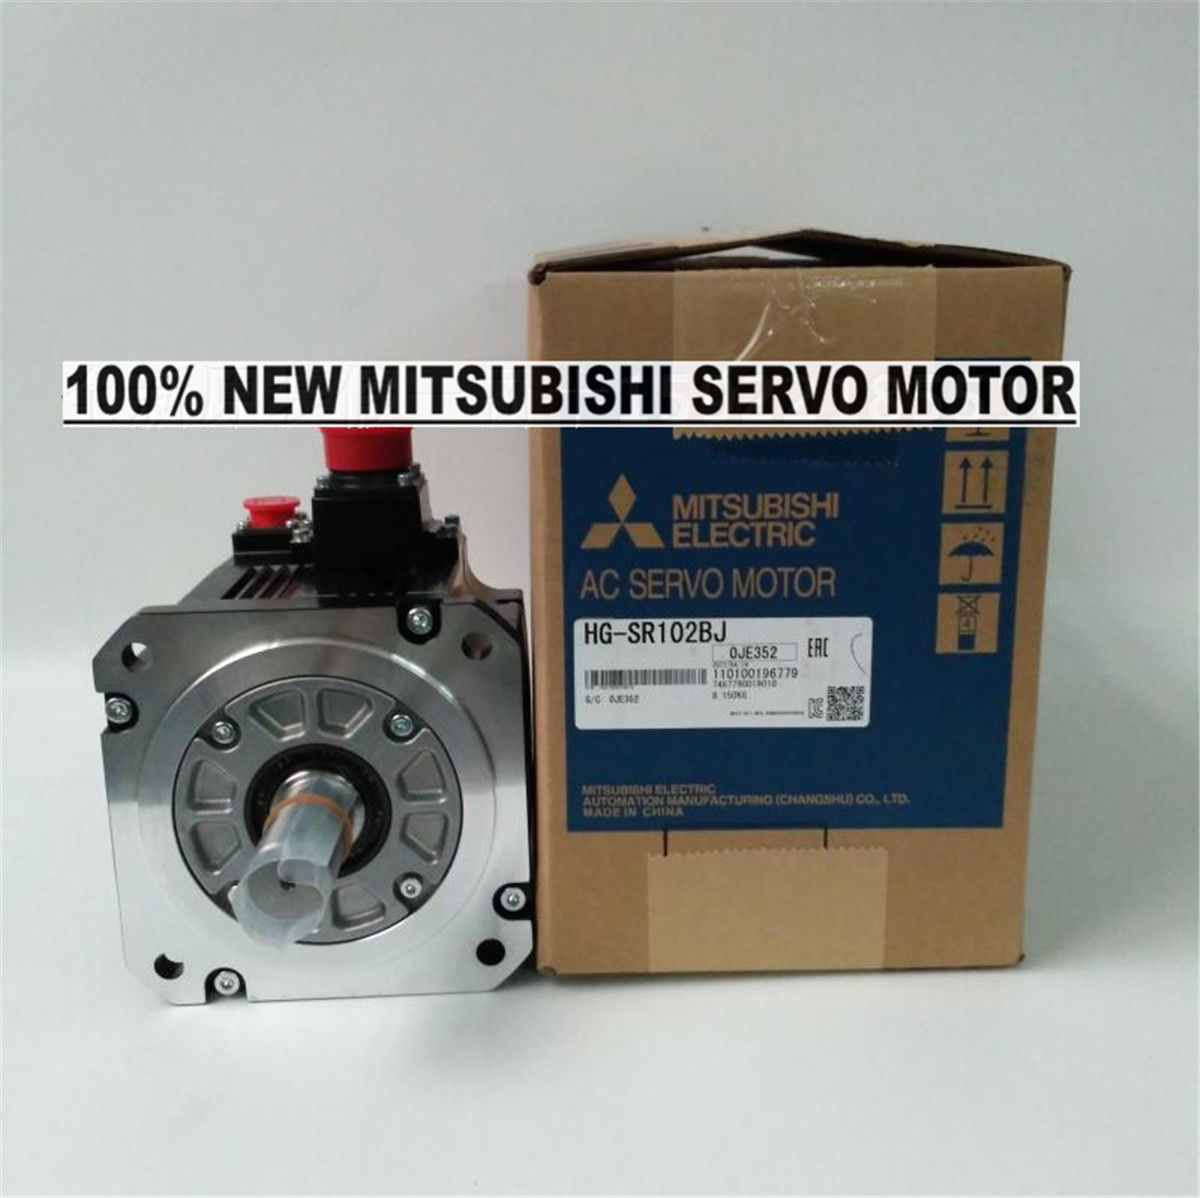 Brand New Mitsubishi Servo Motor HG-SR102BJ in box HGSR102BJ